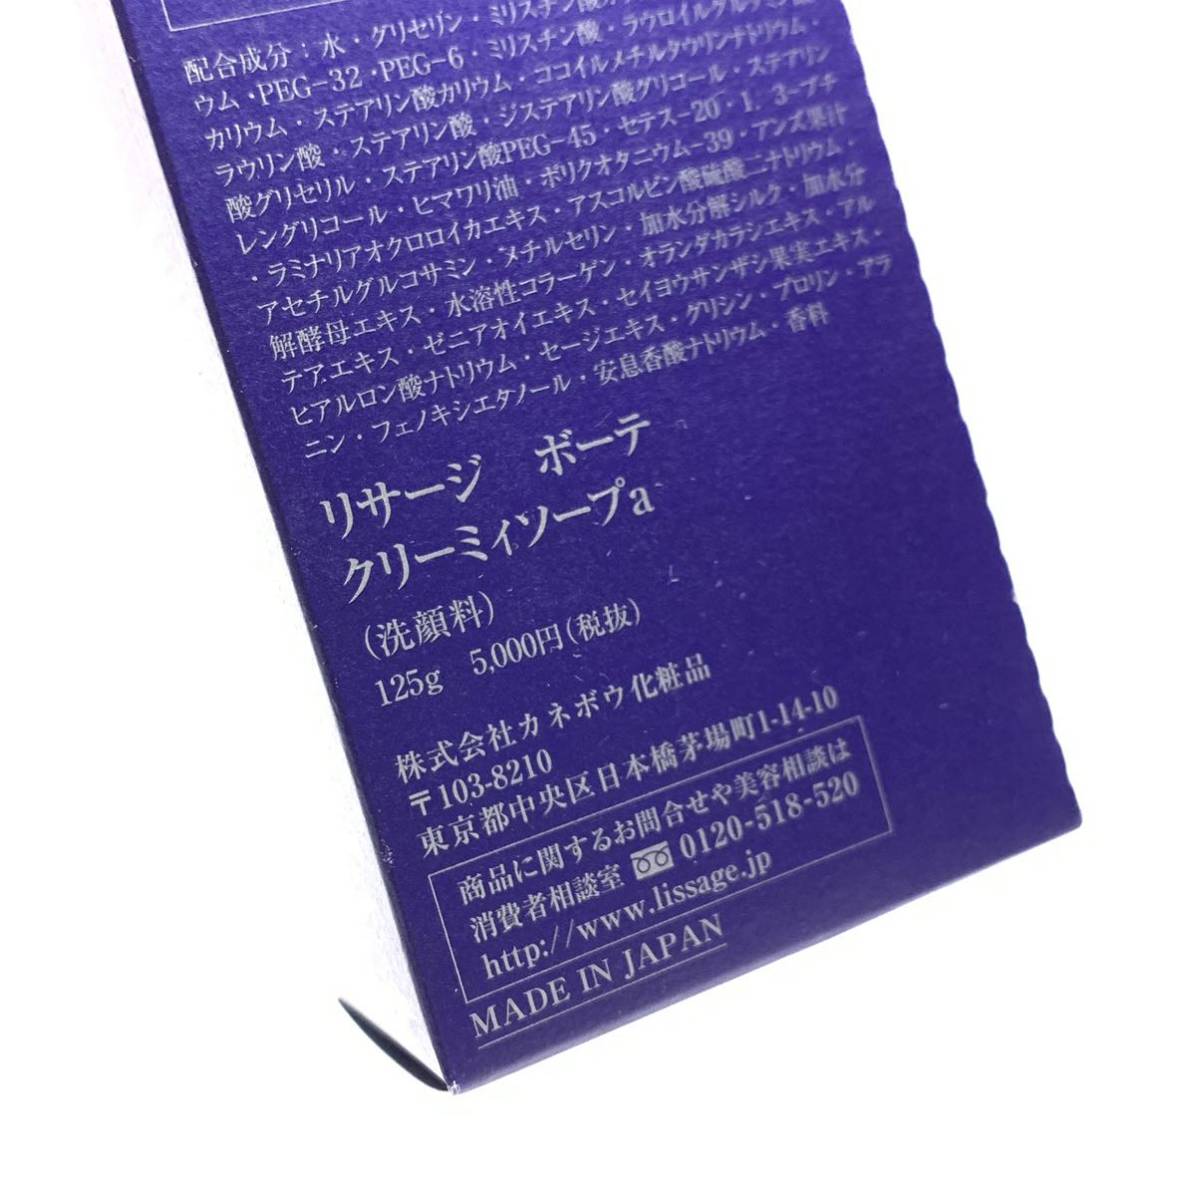 未使用 カネボウ リサージボーテ クリーミィソープ a 洗顔料 125g 日本製 MADE IN JAPAN スキンケア 化粧品 コスメ 管理RY23003533_画像9